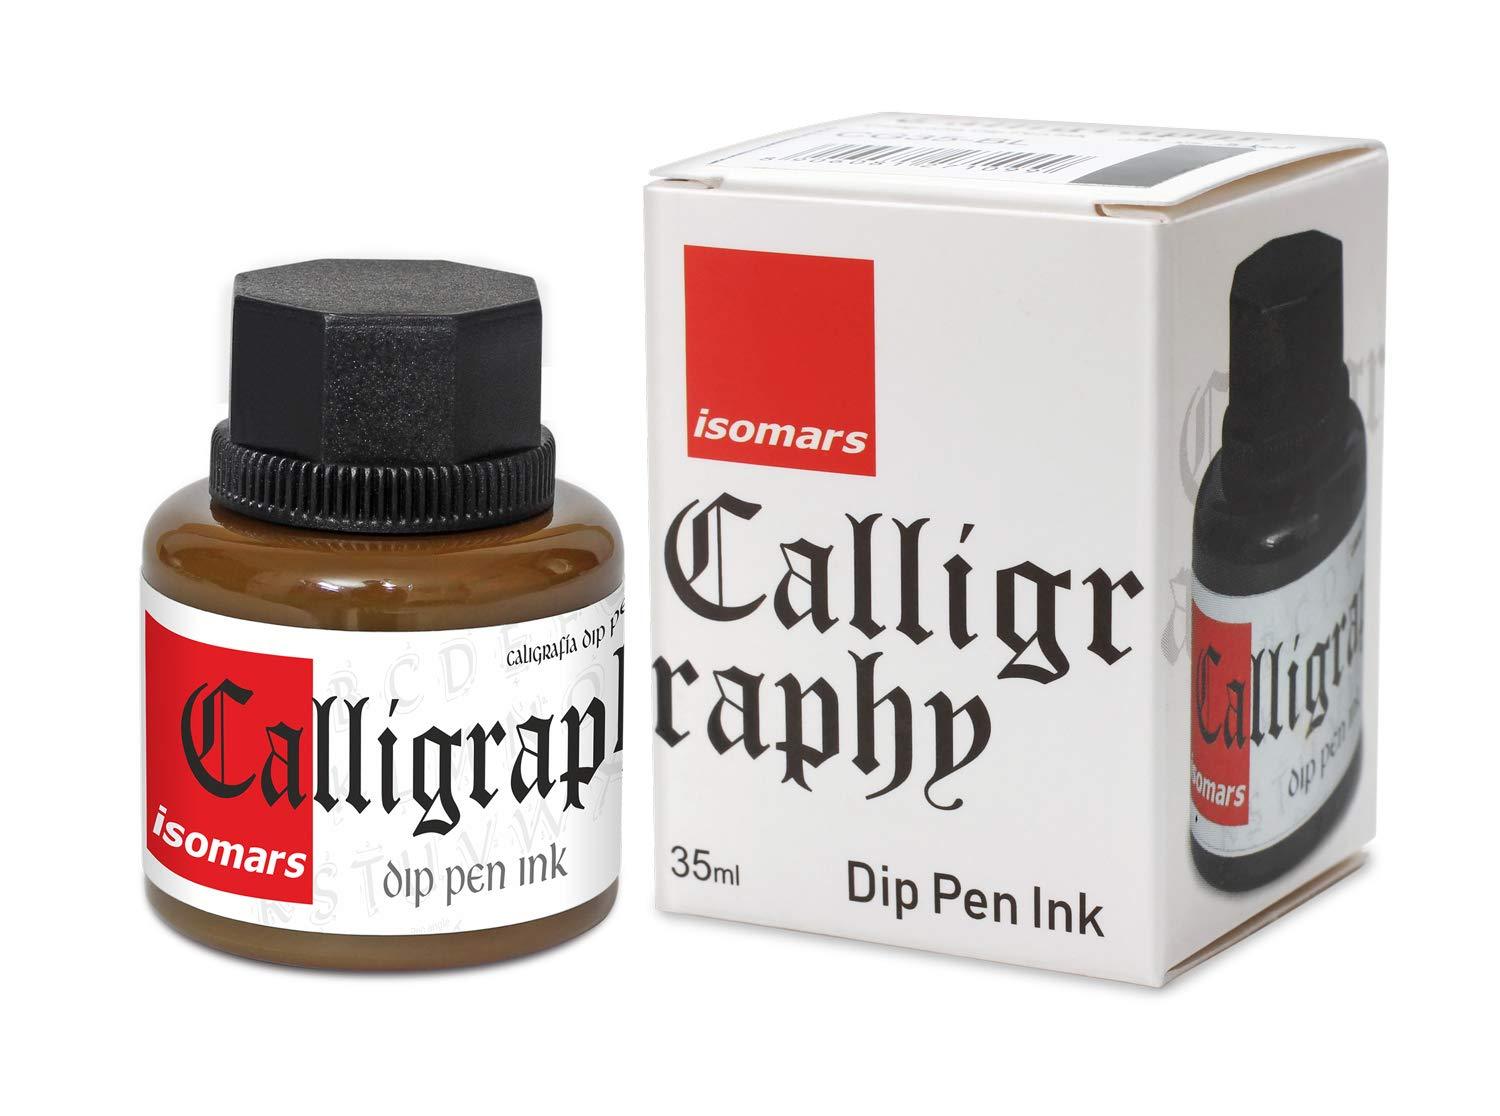 Isomars Calligraphy Dip Pen Ink 35ml - Brown